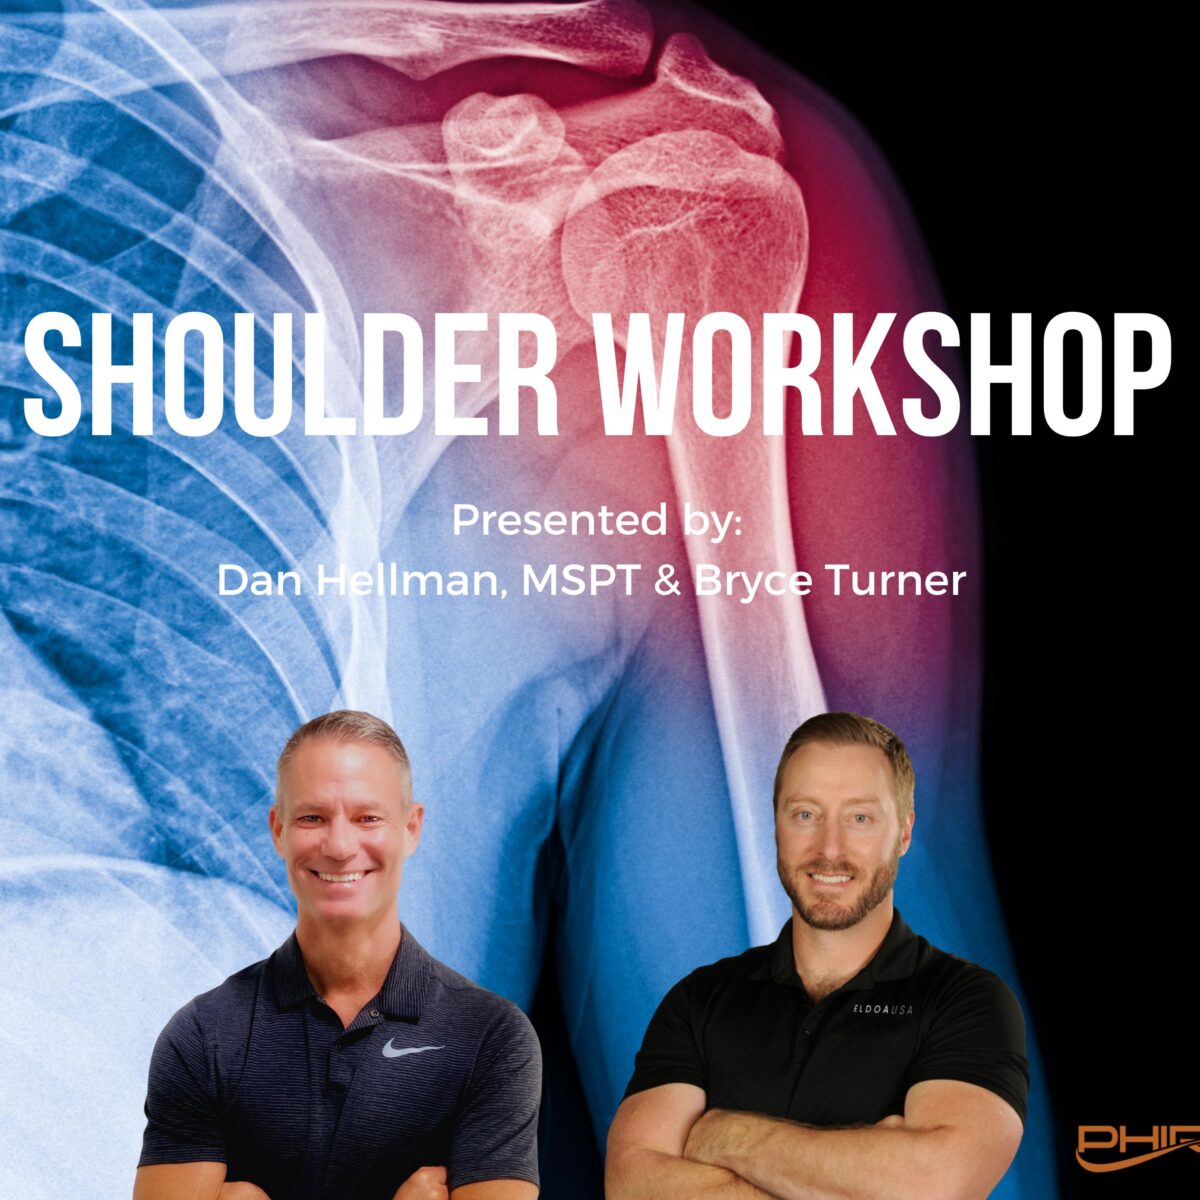 The Shoulder Workshop